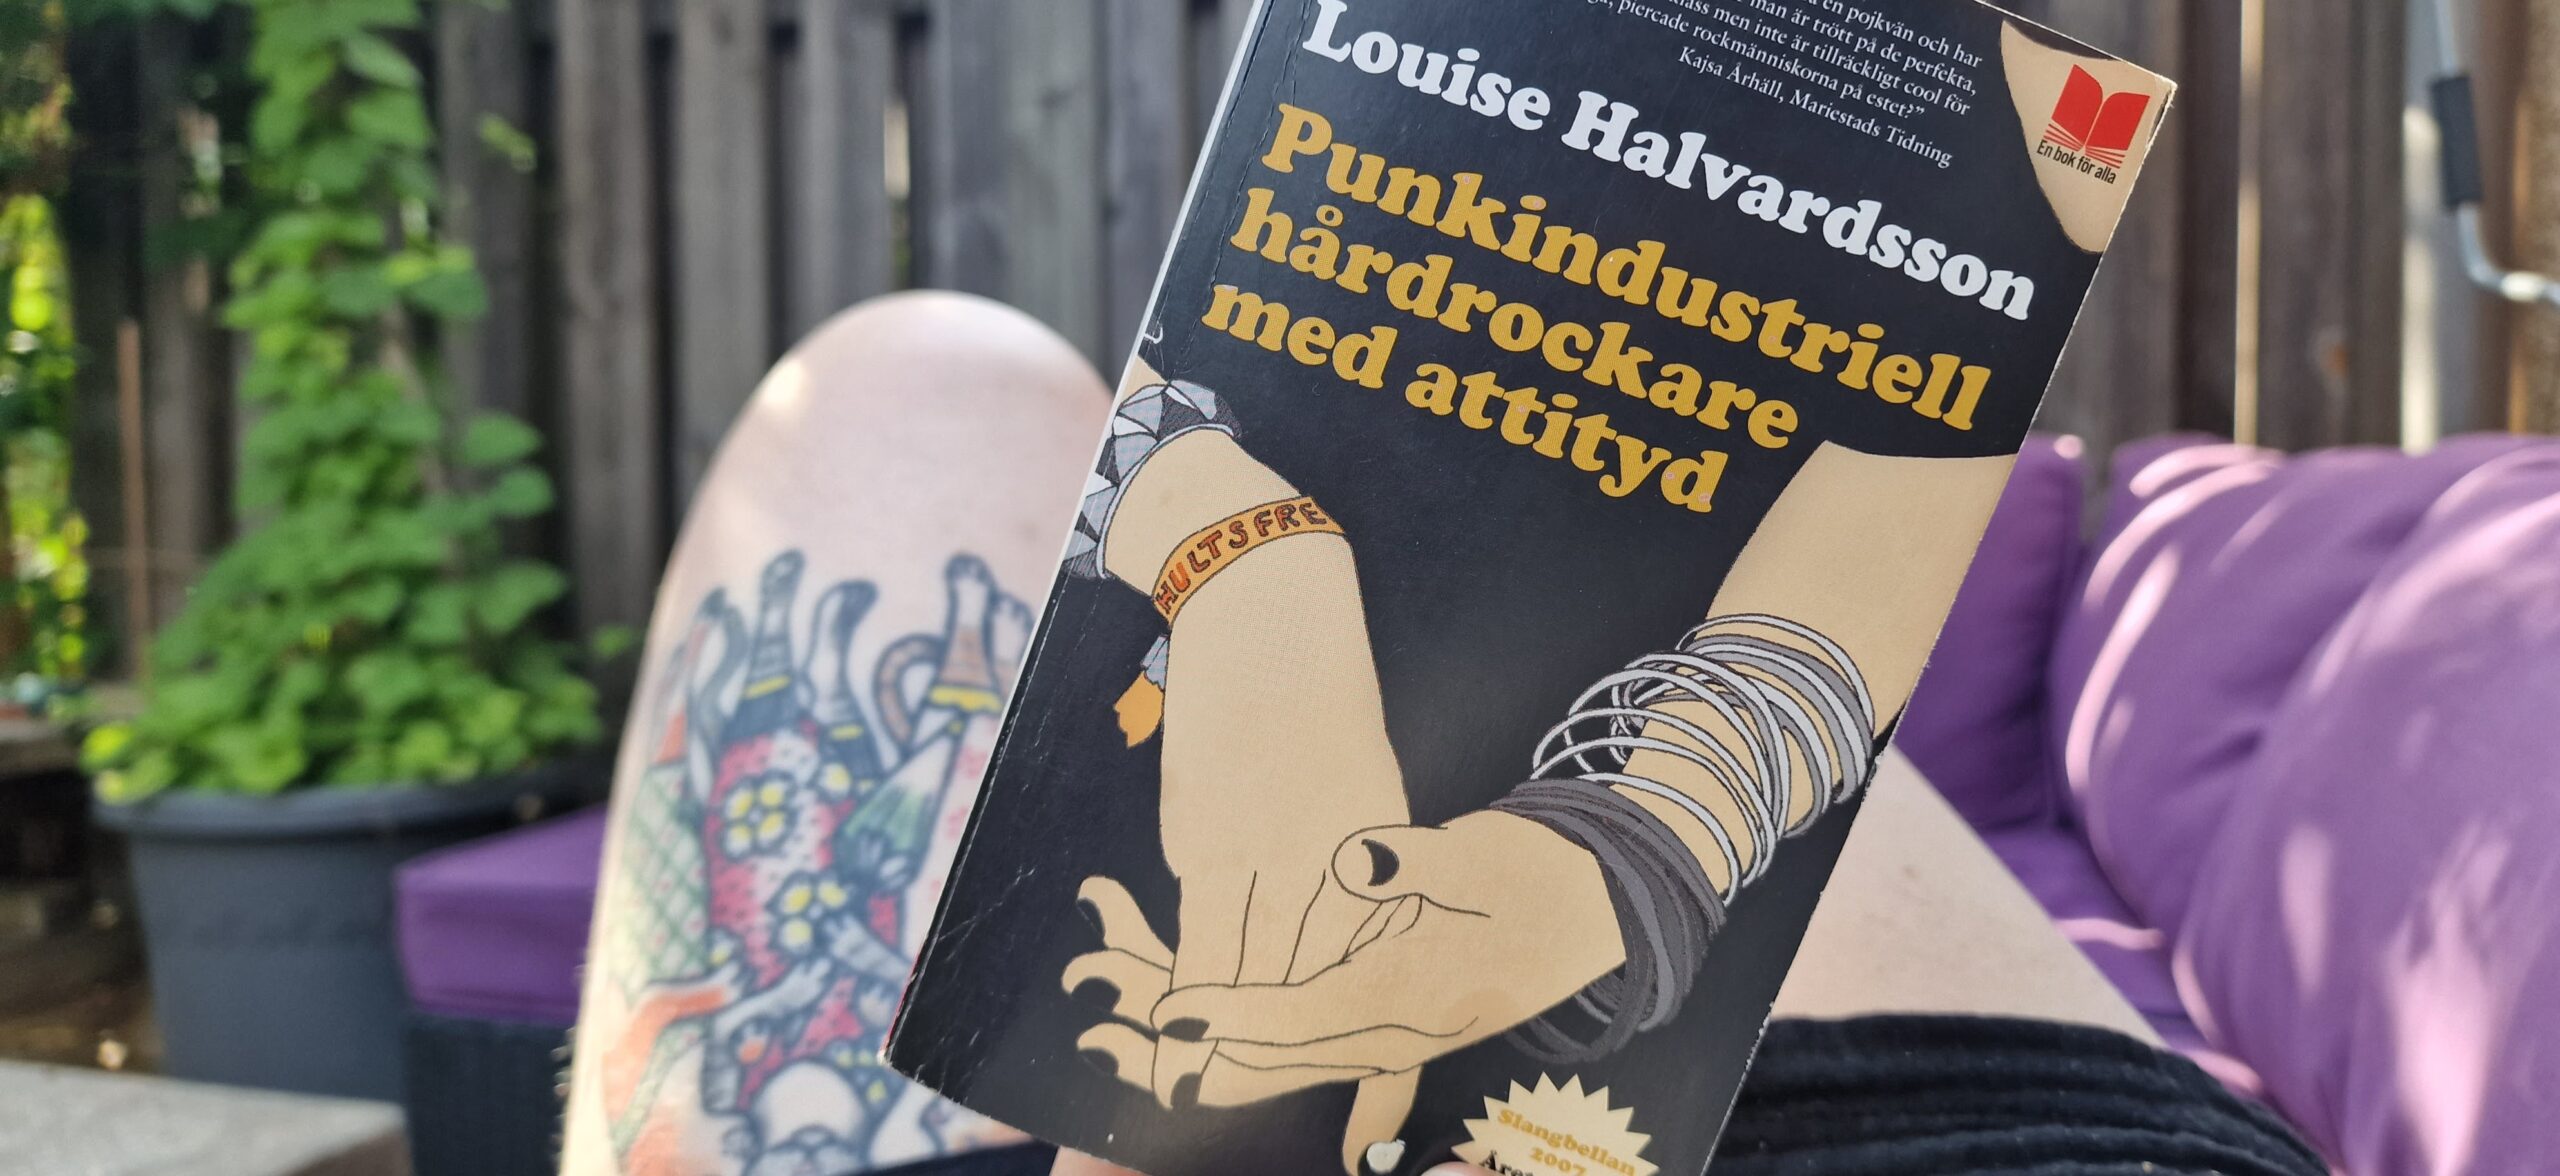 Recension: Punkindustriell hårdrockare med attityd av Louise Halvardsson